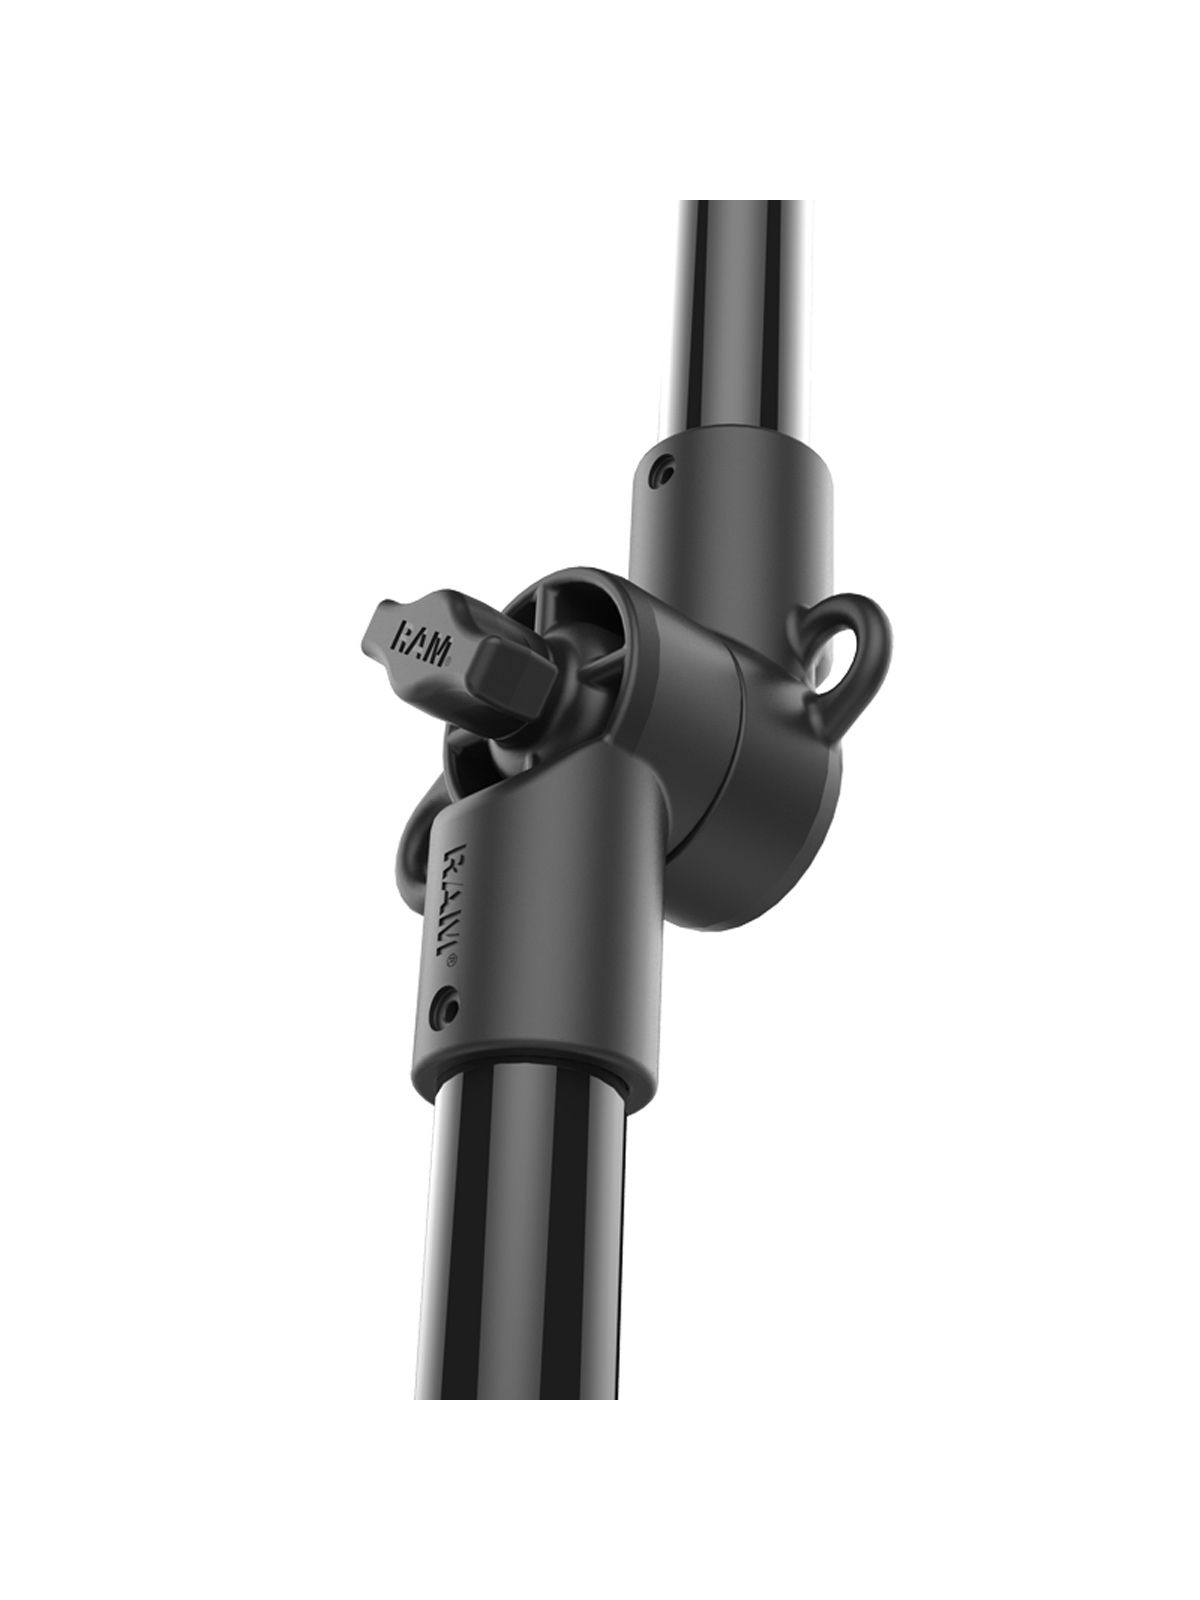 RAM Mounts Tough-Pole Action Kamera-Halterung mit Doppel T-Slot Basis für Tough-Track Schienensysteme - Verbundstoff, Ratchet-System, Gesamtlänge ca. 120 cm